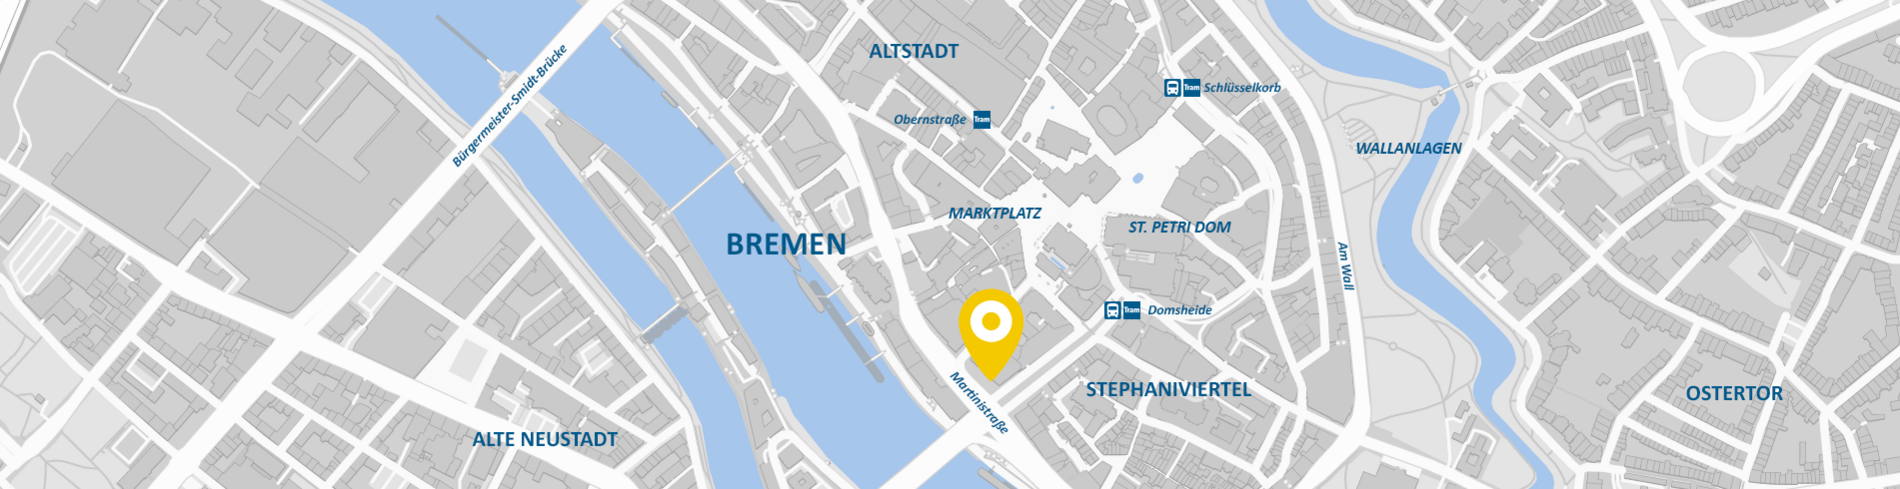 Stadtkarte AllDent Bremen 